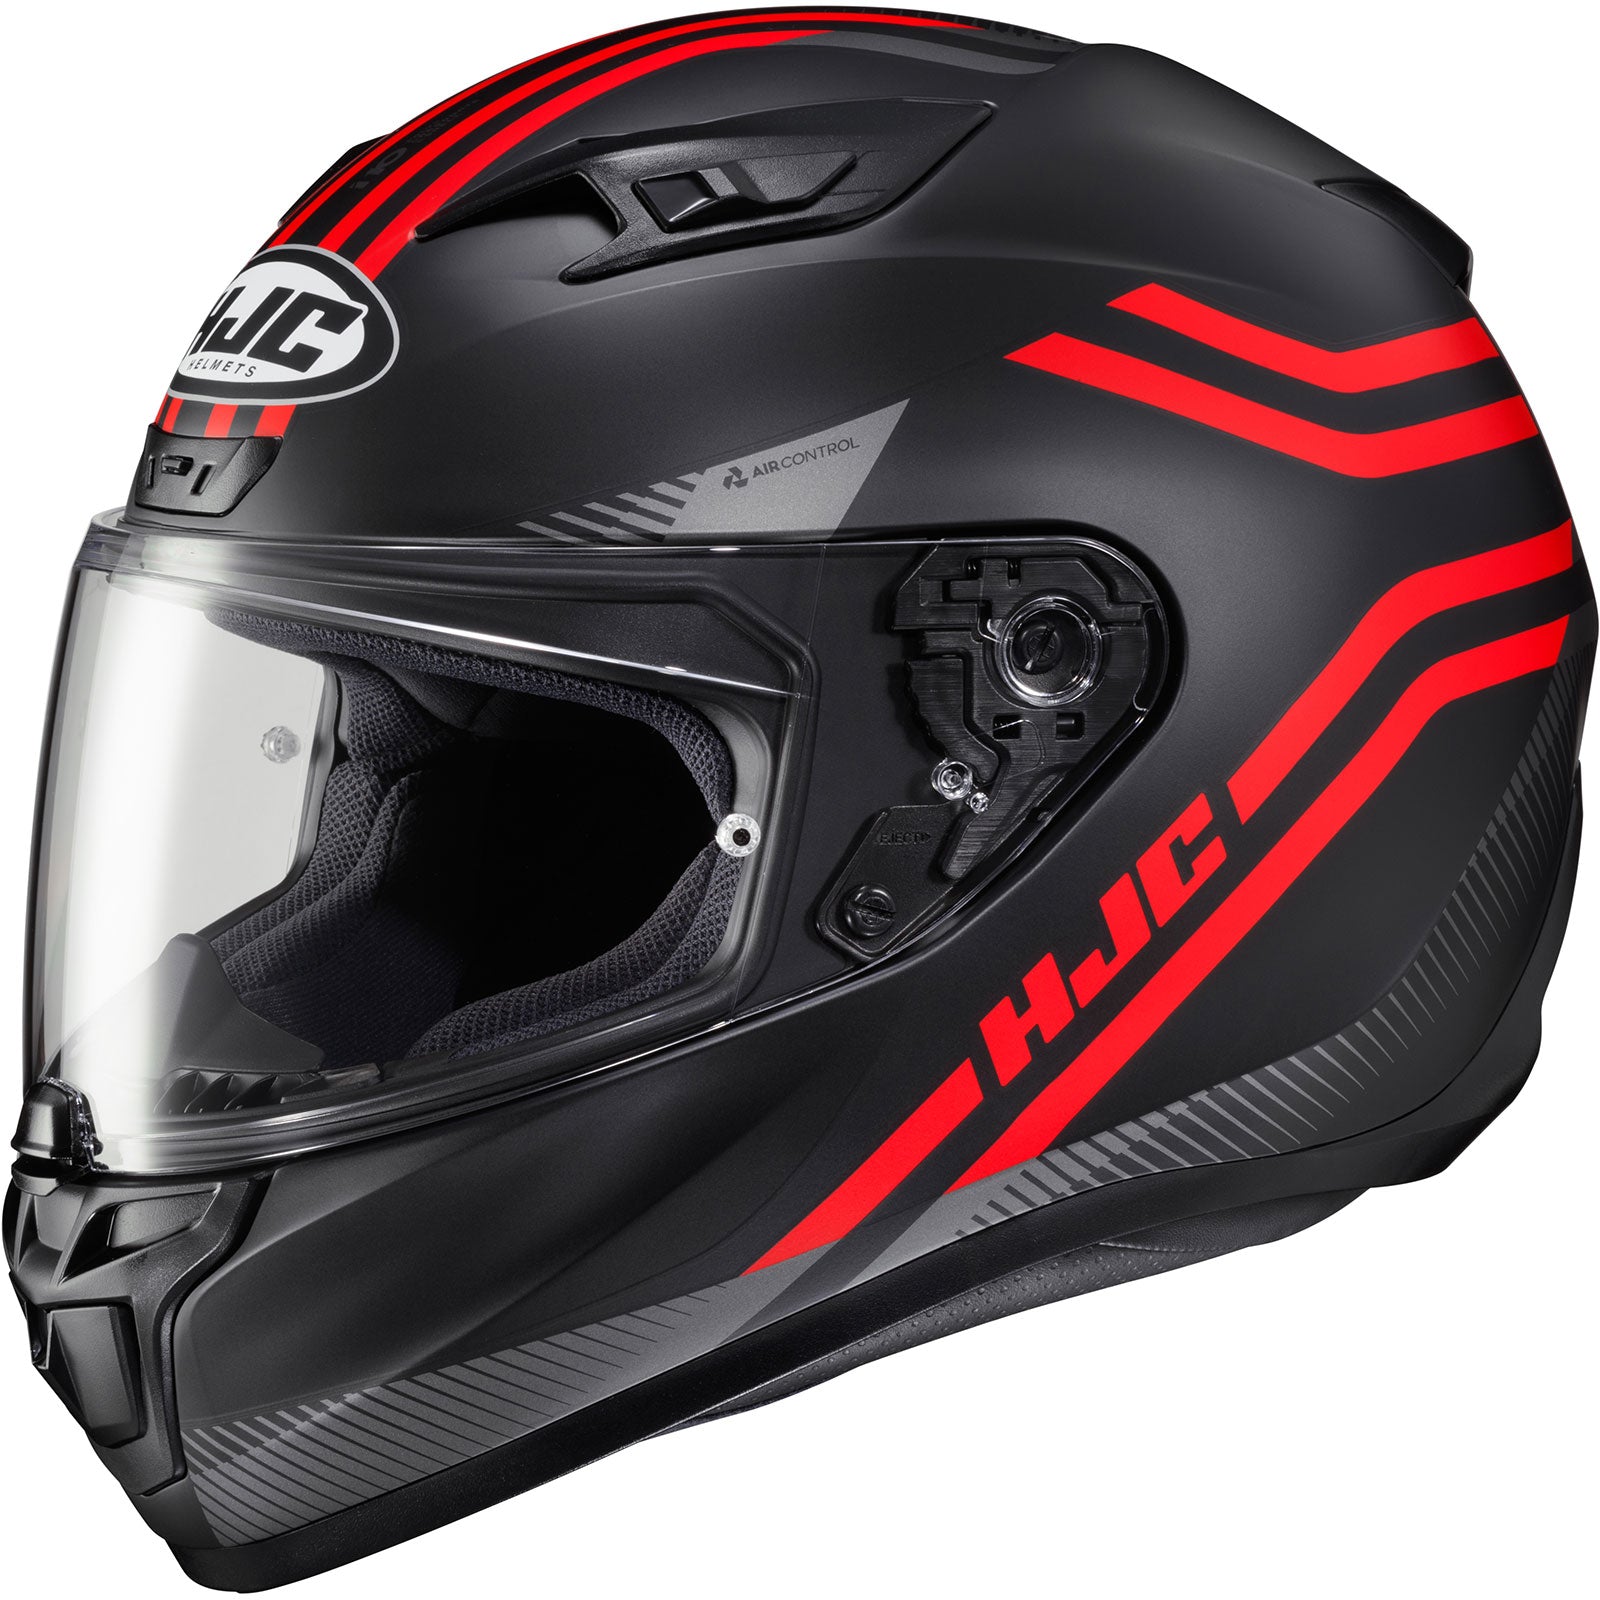 HJC i10 Strix Adult Street Helmets-0810